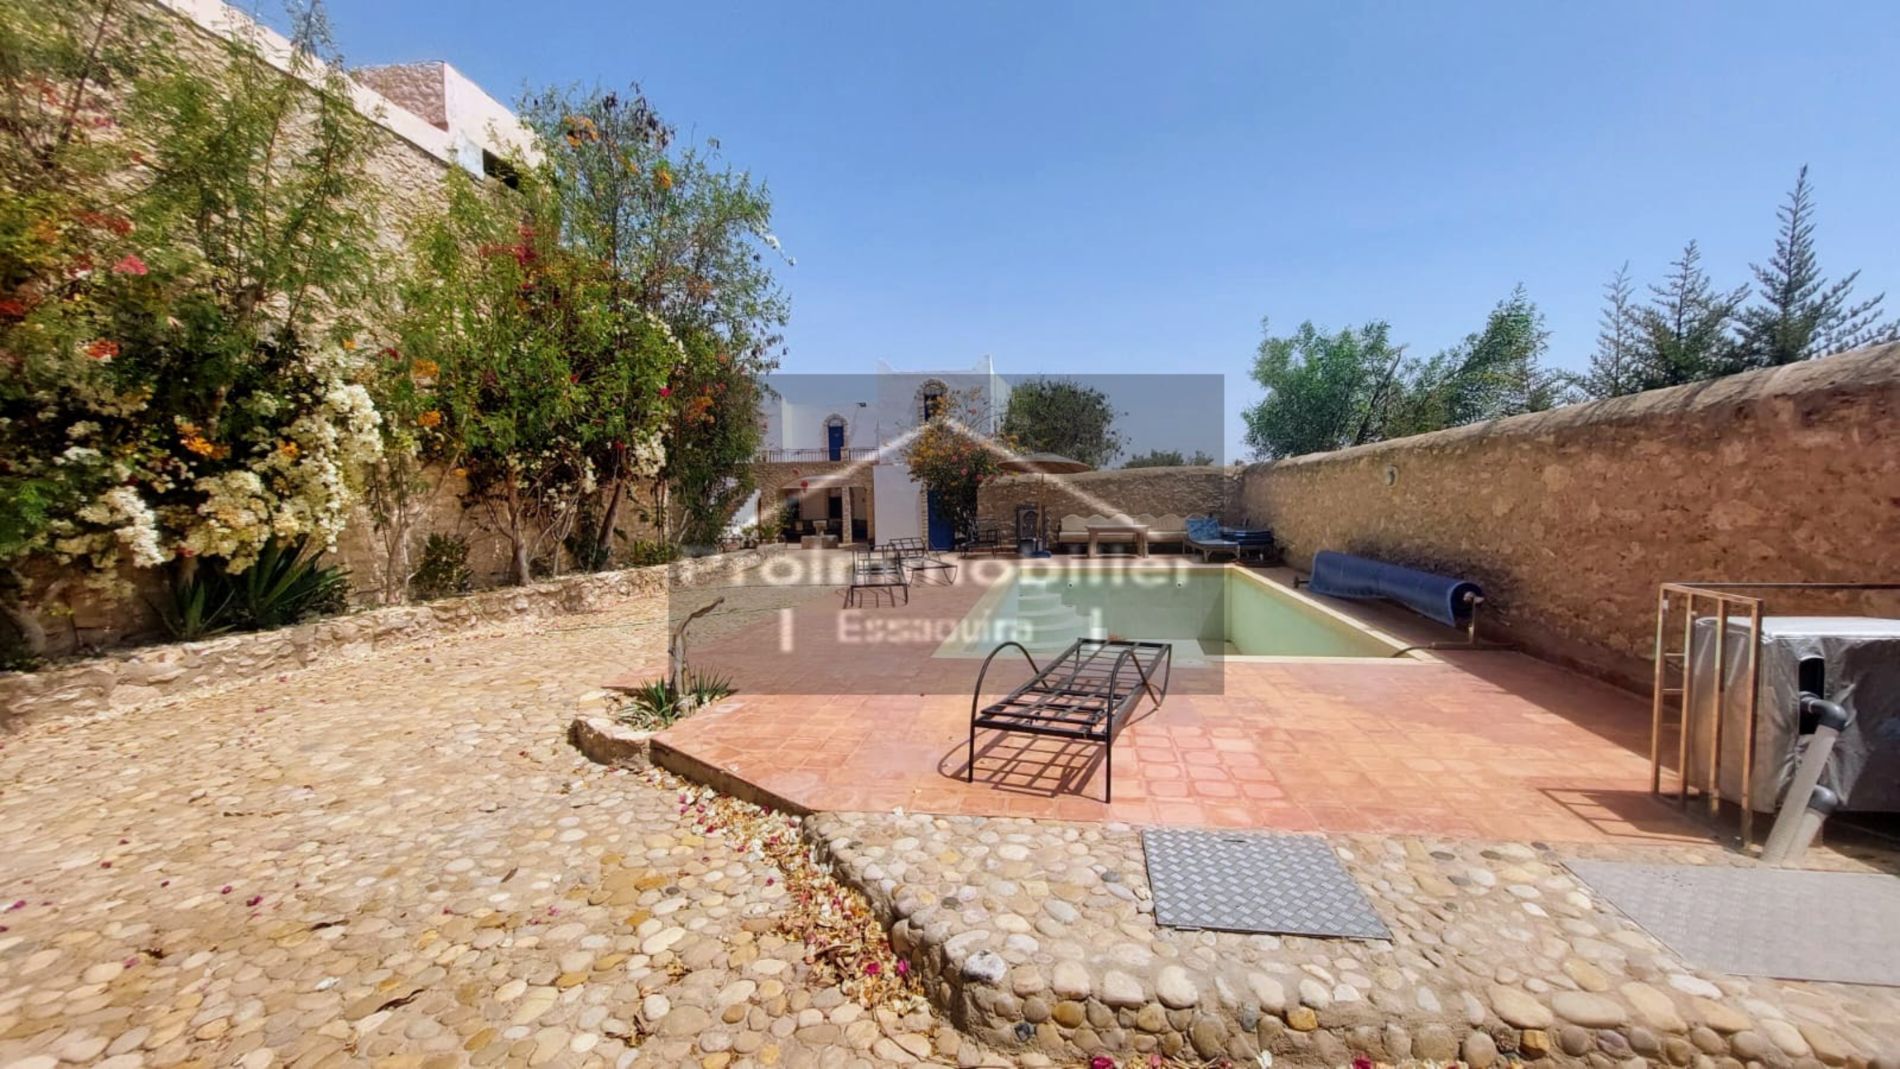 23-04-05-VM 在 Essaouira Land 220 m² 出售 600 m² 乡村美丽的房子